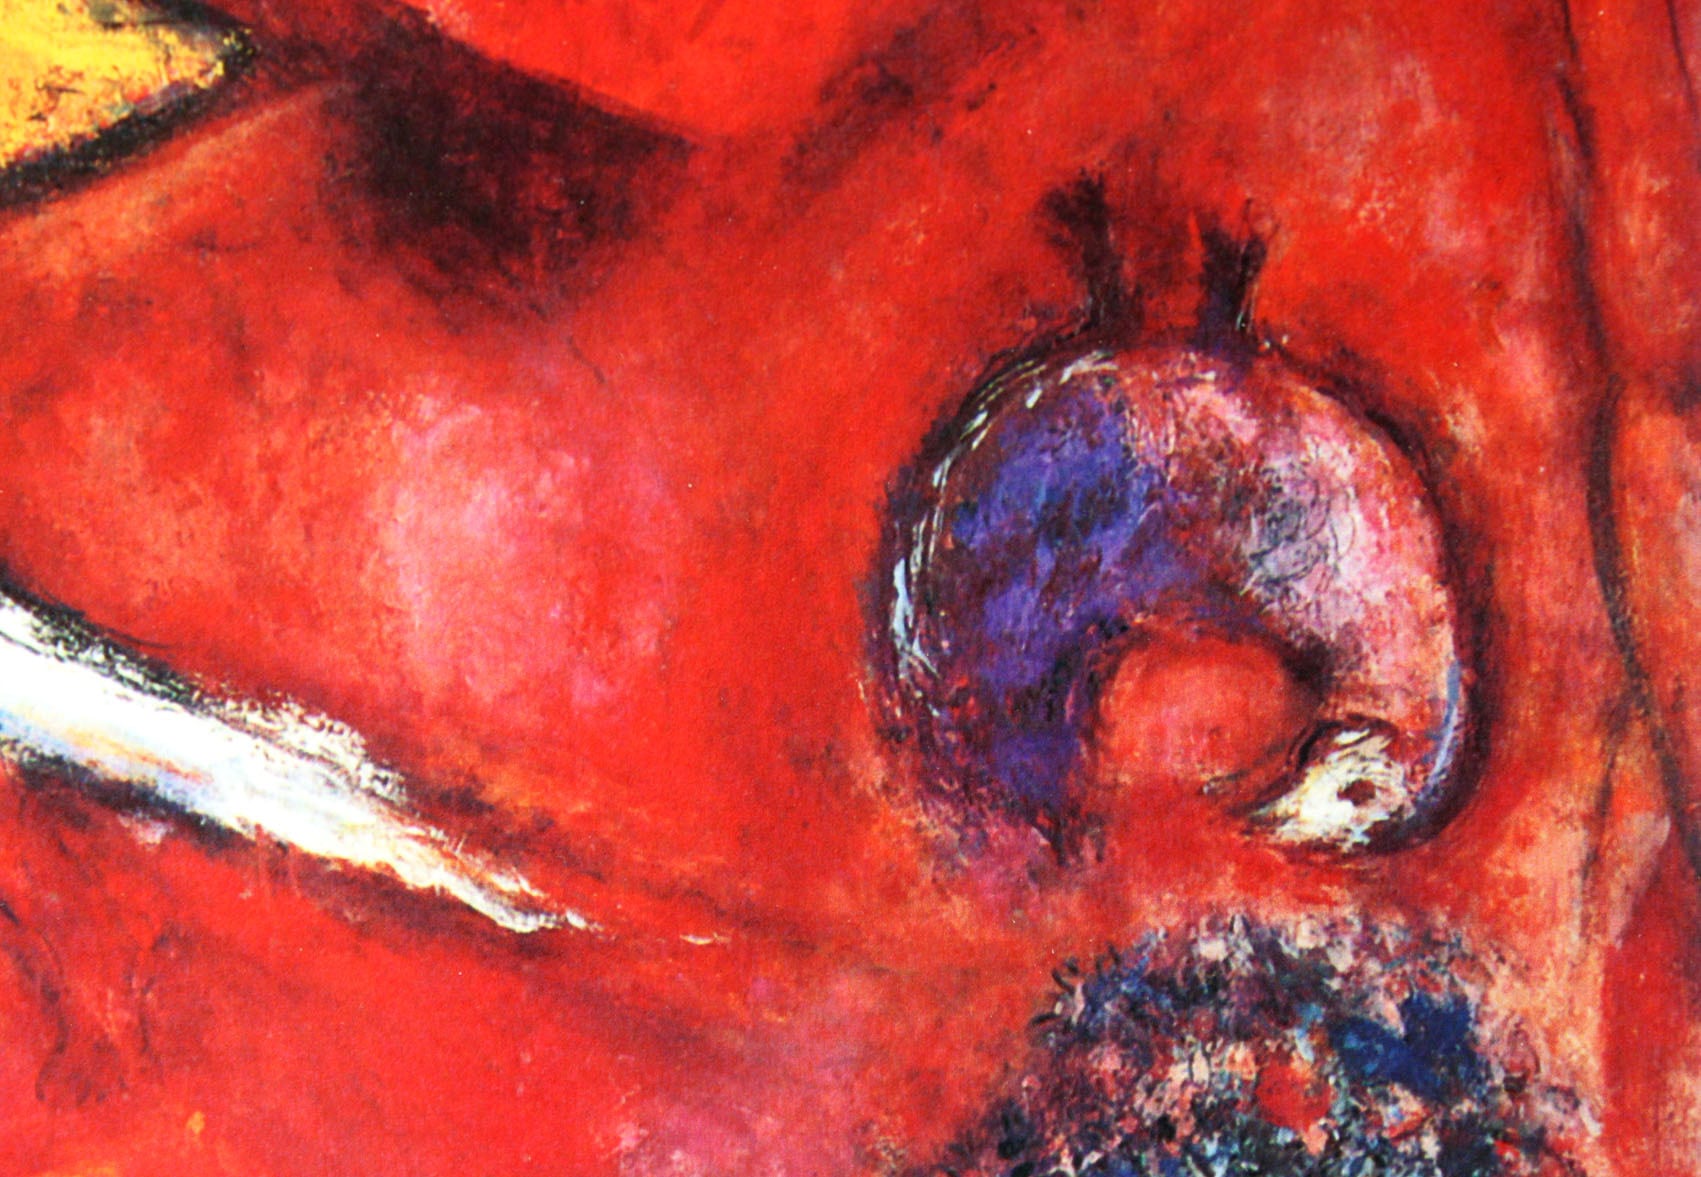 マルク・シャガール絵画「ソロモンの雅歌」作品証明書・展示用フック・限定375部エディション付複製画ジークレ